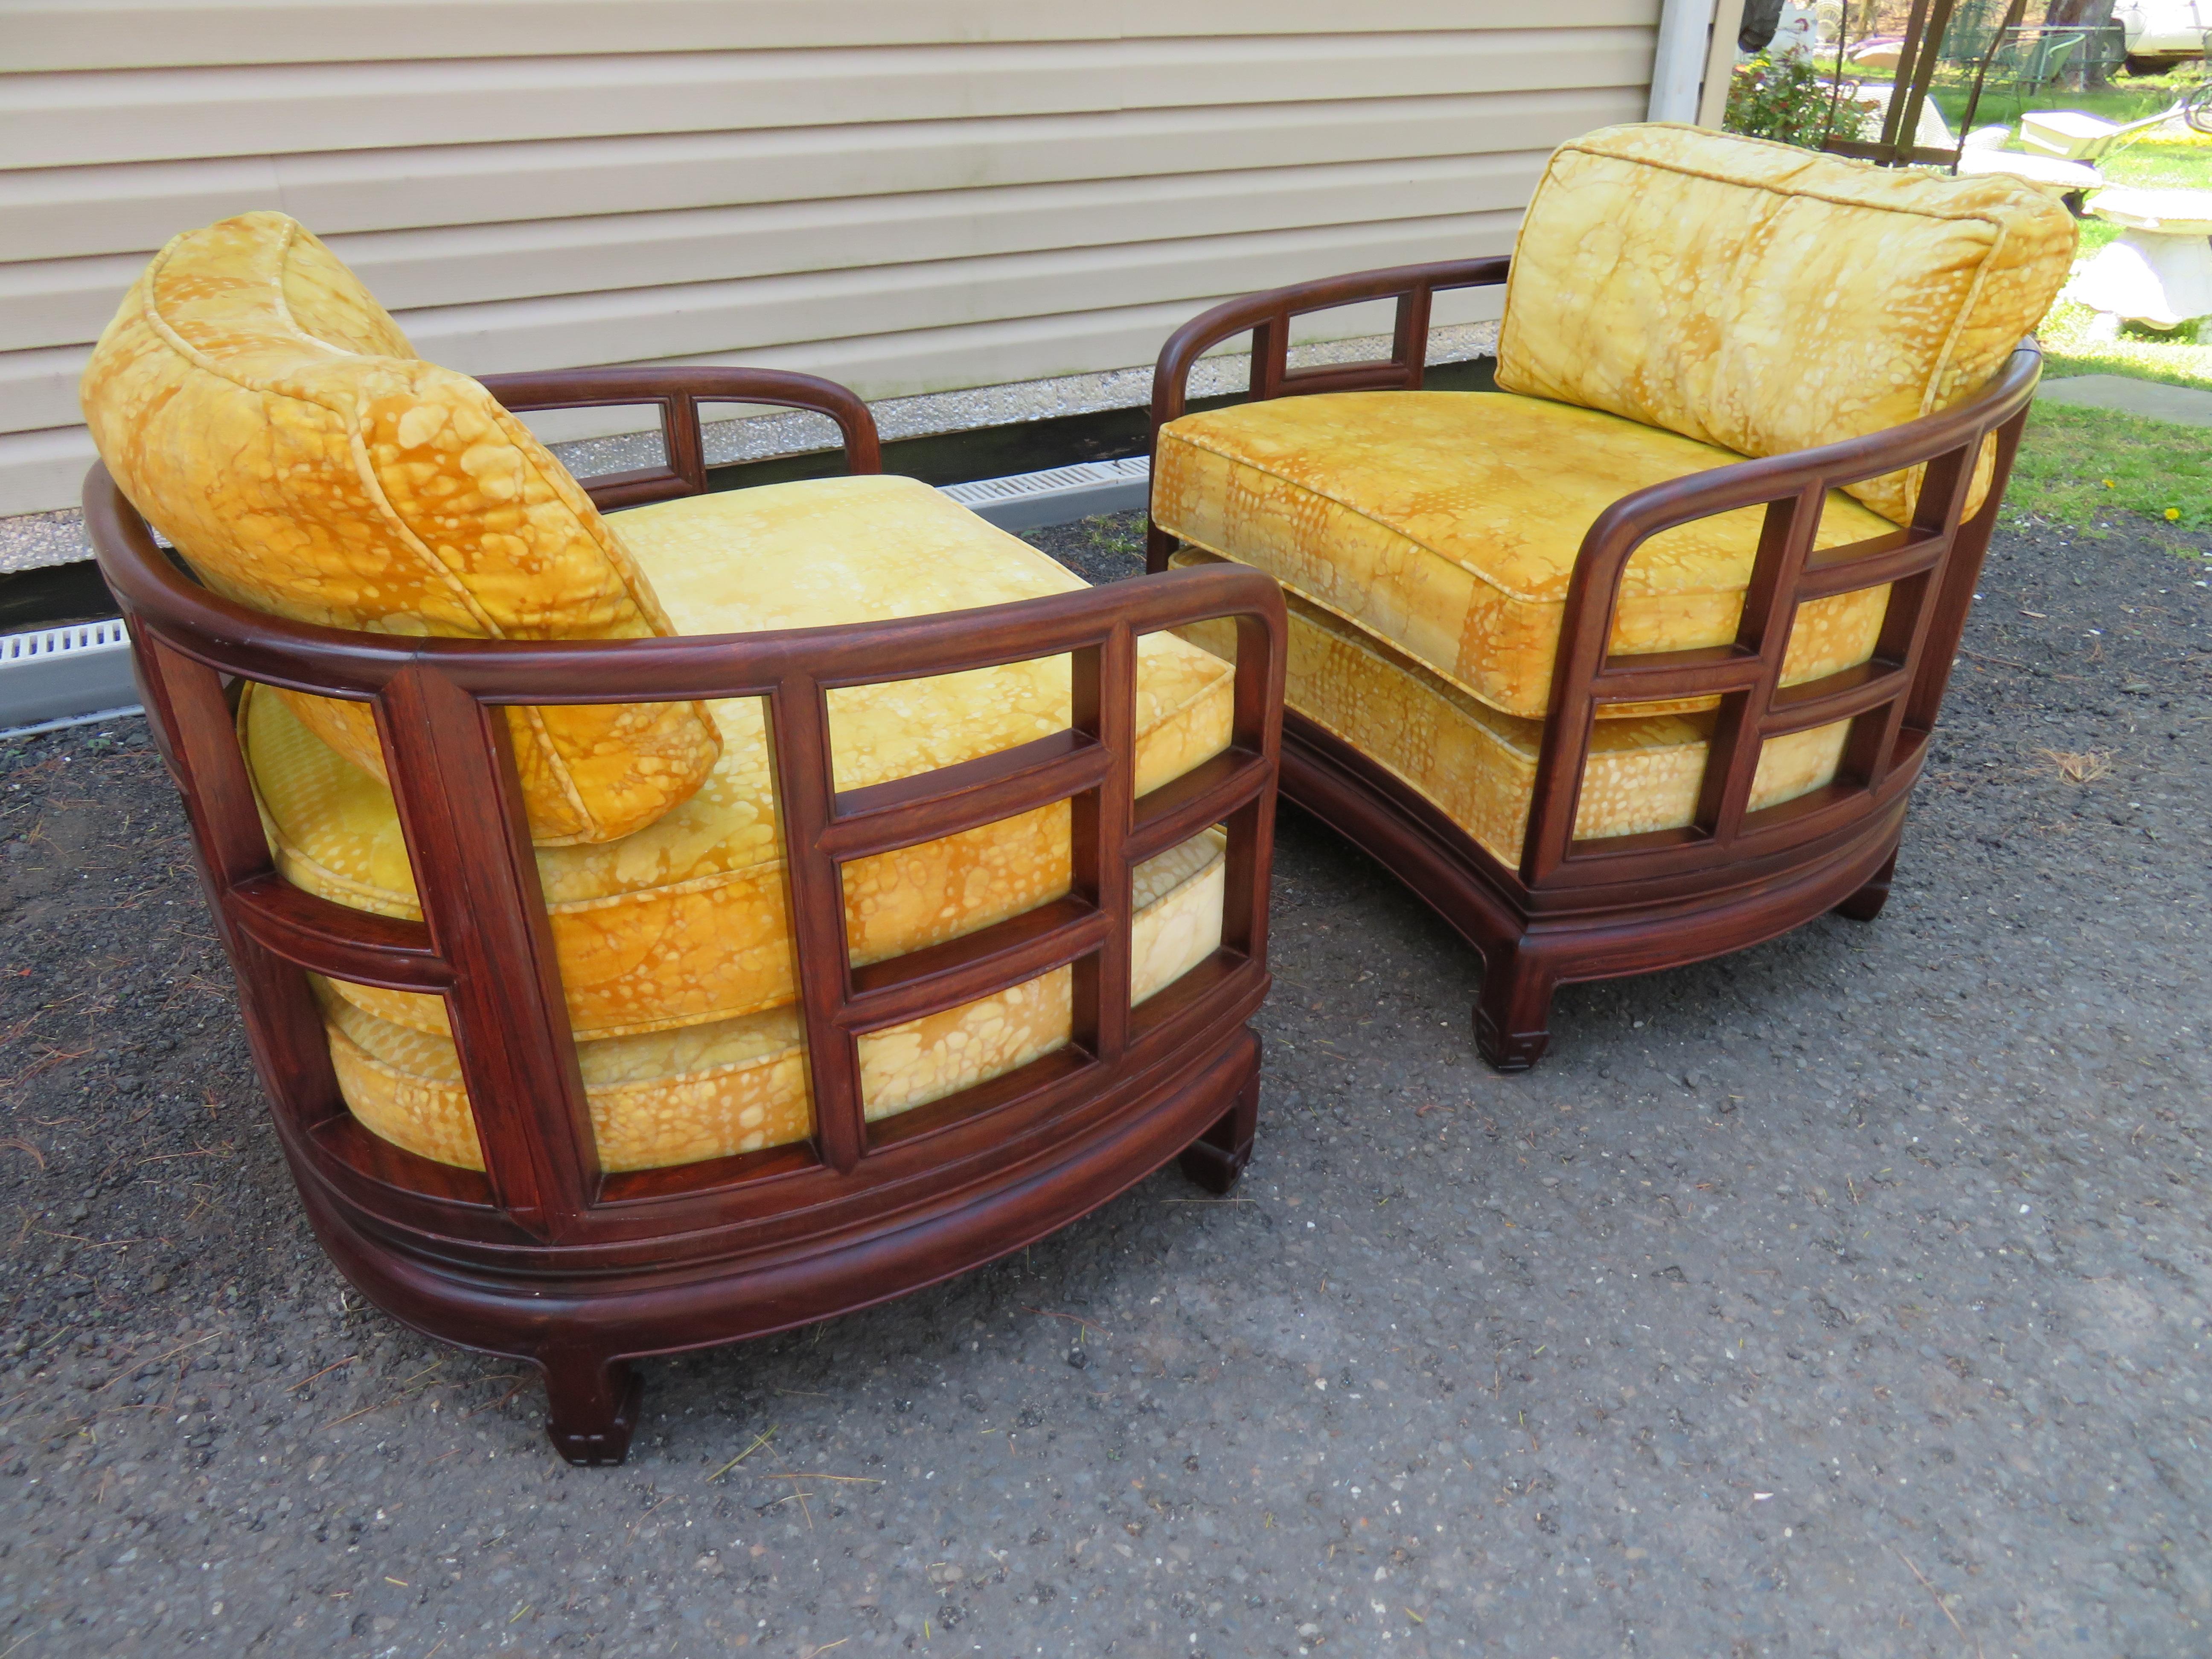 Superbe paire de chaises longues en bois de rose de style Chinoiserie. Ces chaises fines sont tapissées d'un magnifique tissu en velours Jack Lenor Larsen. Nous avons 2 paires si vous en avez besoin de plusieurs - voir les dernières photos pour voir